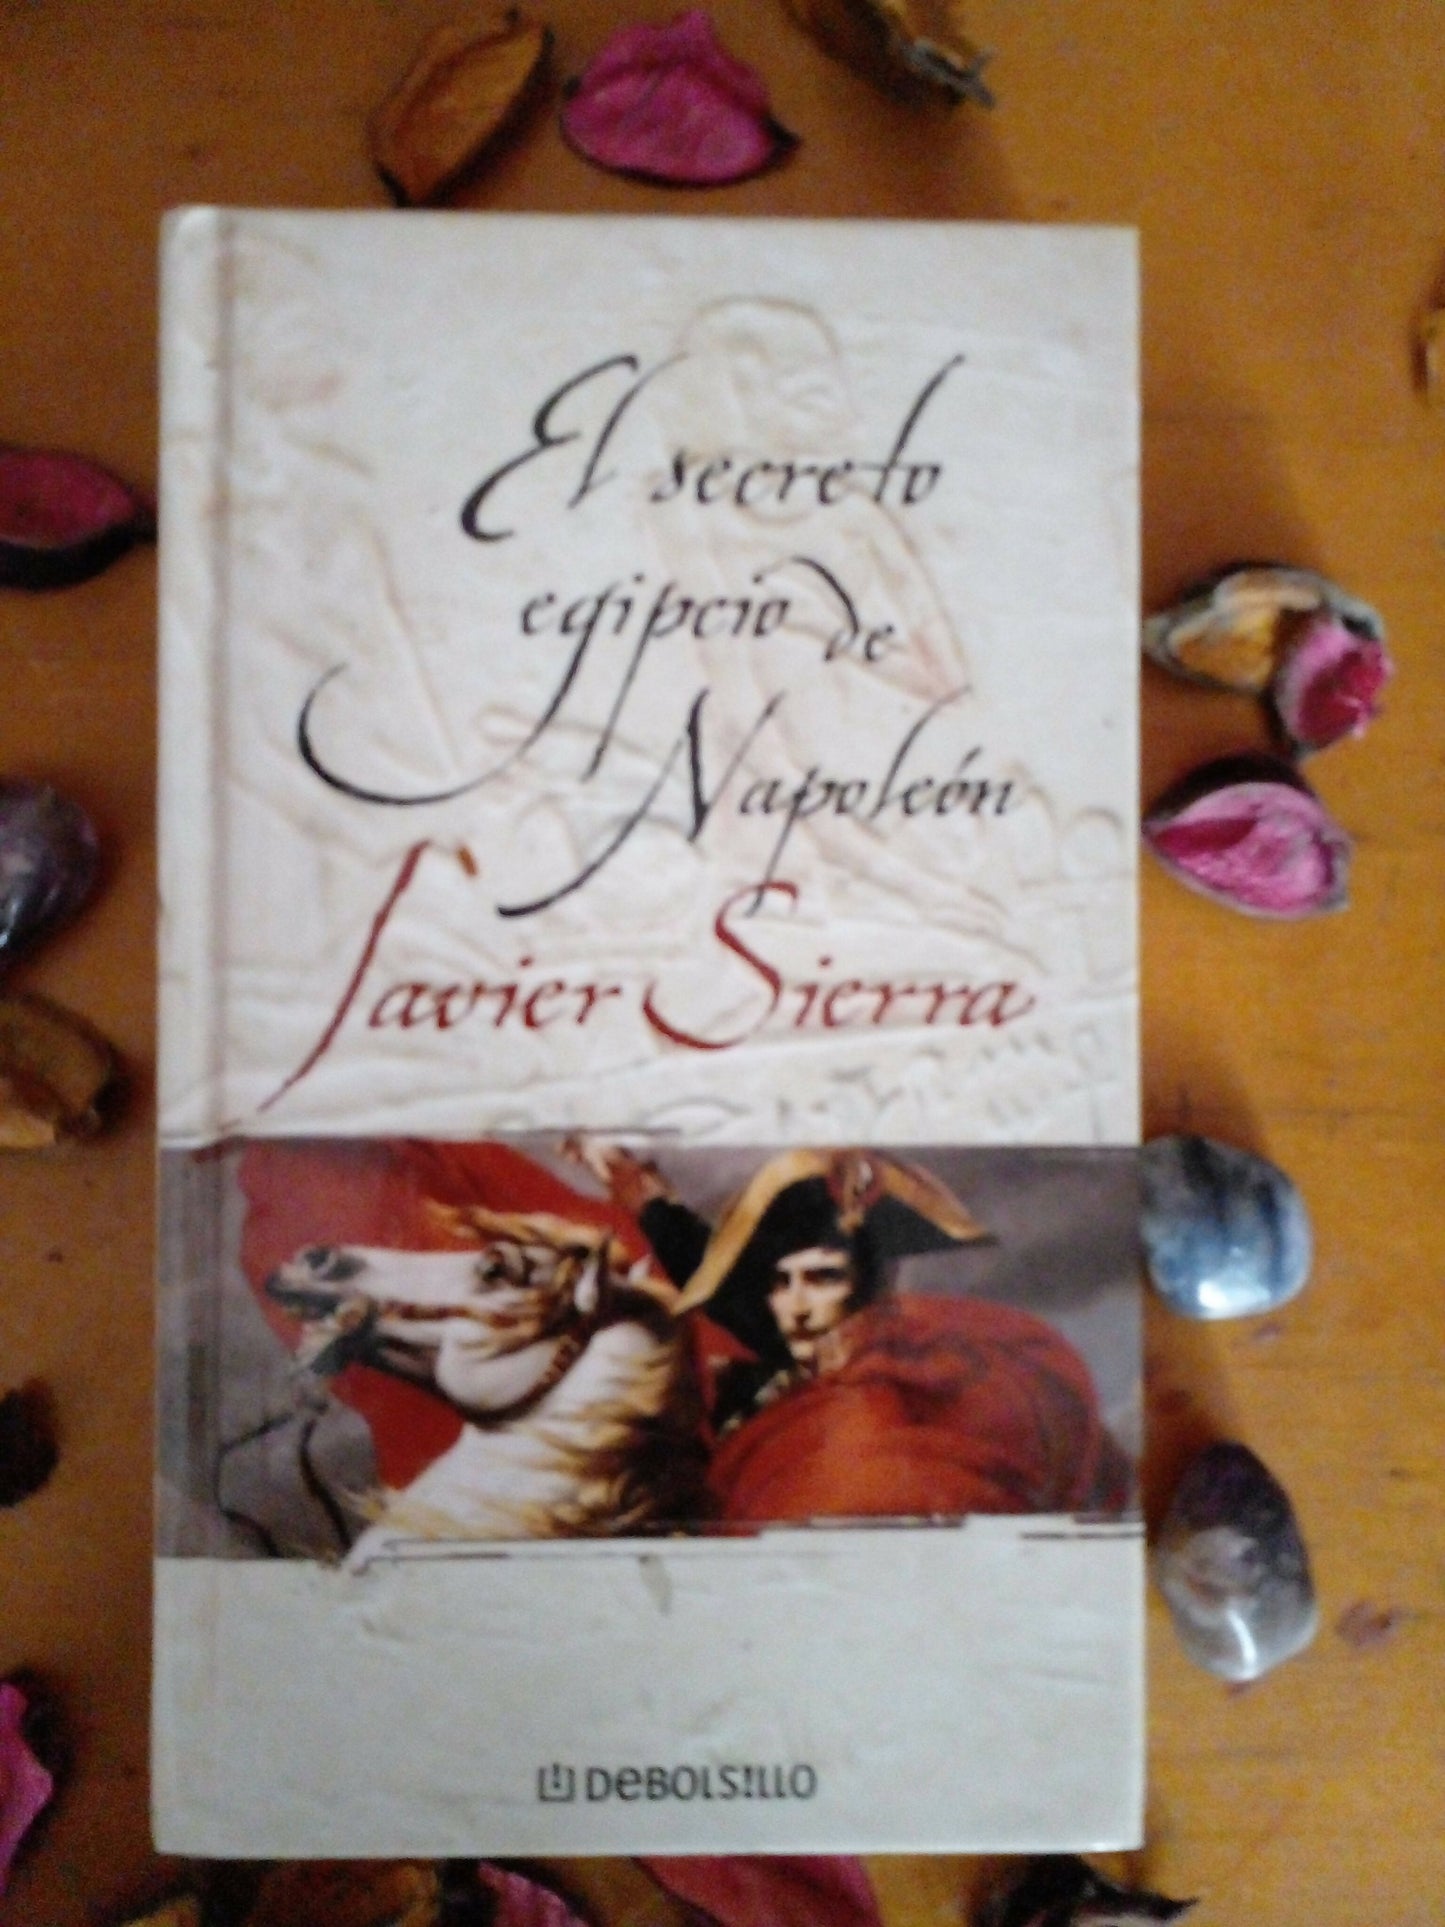 "El Secreto Egipcio de Napoleón"